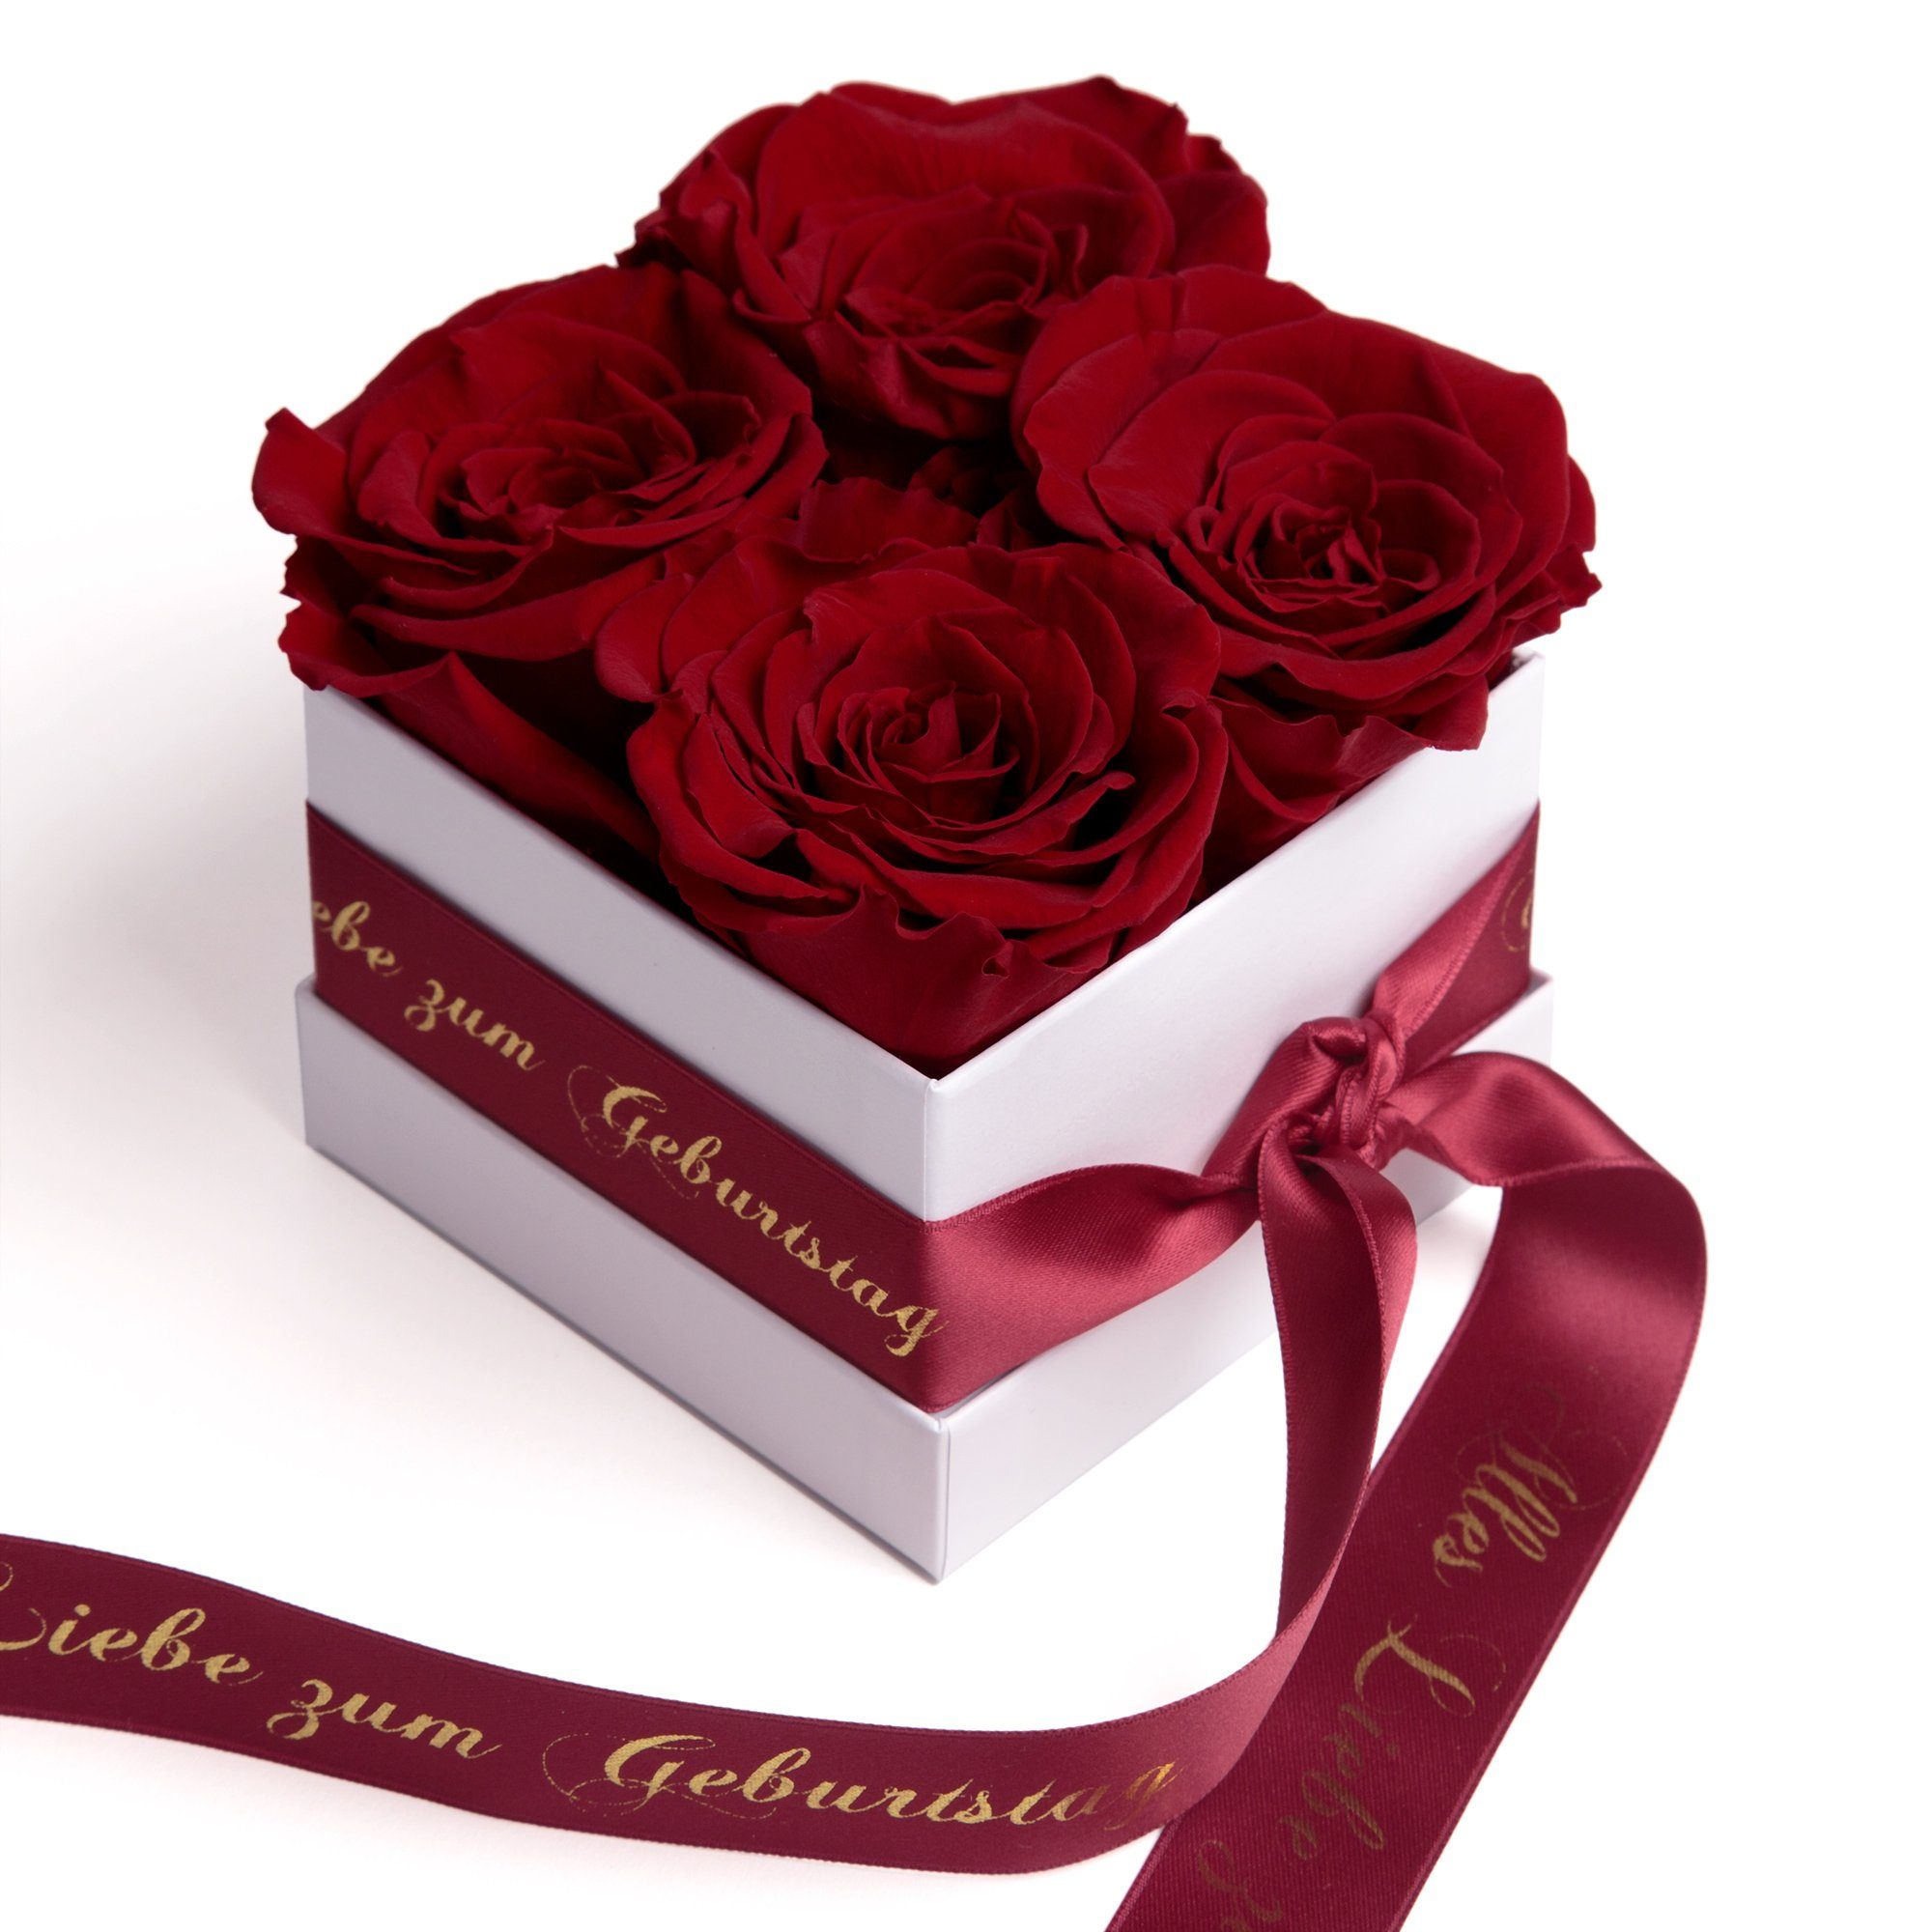 ROSEMARIE SCHULZ Heidelberg Dekoobjekt Infinity Rosenbox Alles Liebe zum Geburtstag Blumen Geschenk, Echte Rose haltbar bis zu 3 Jahre bourgundy